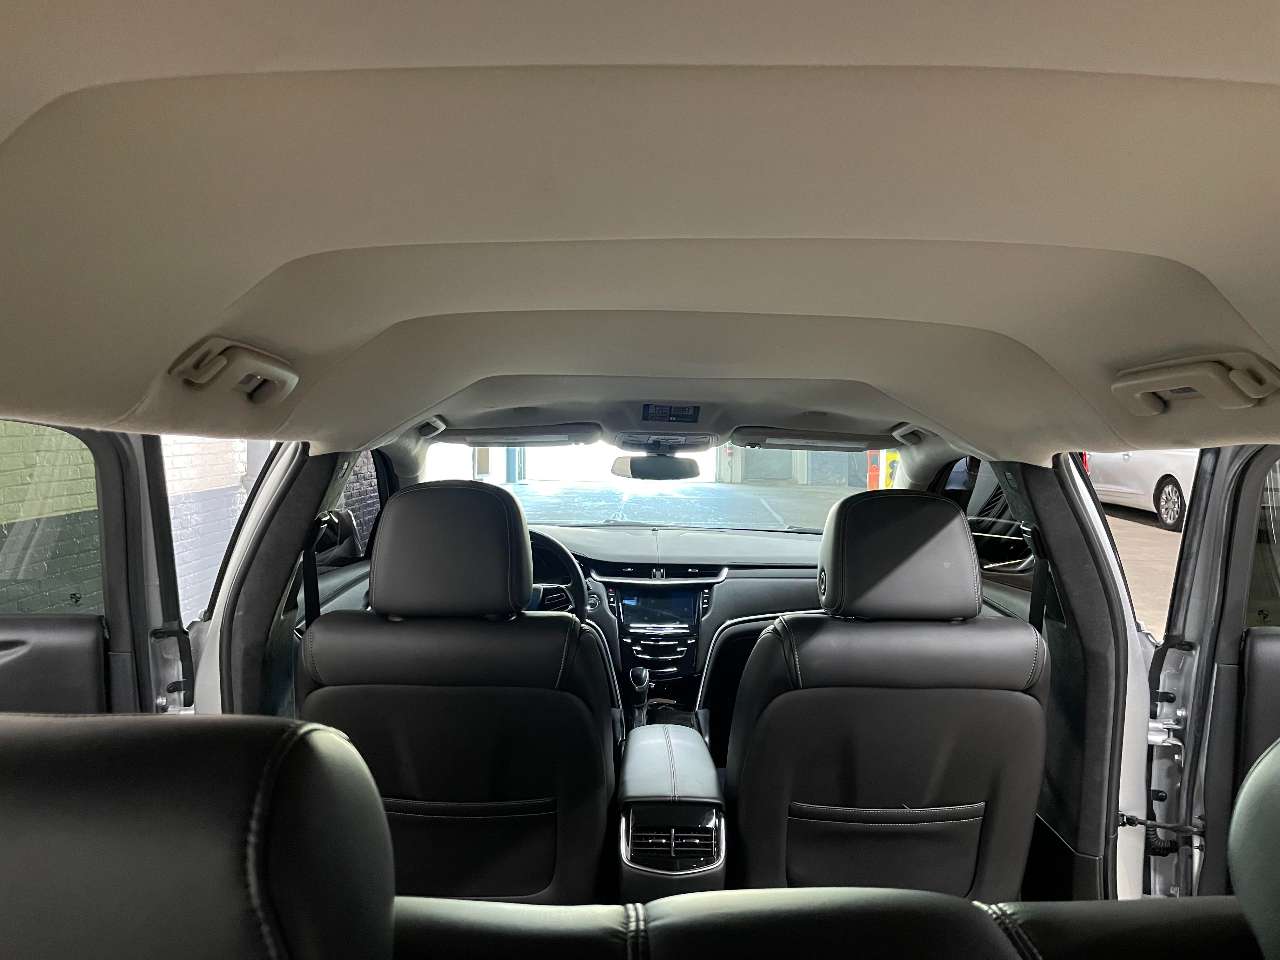 2019 Cadillac Platinum 6 Door Limousine 1690463650997